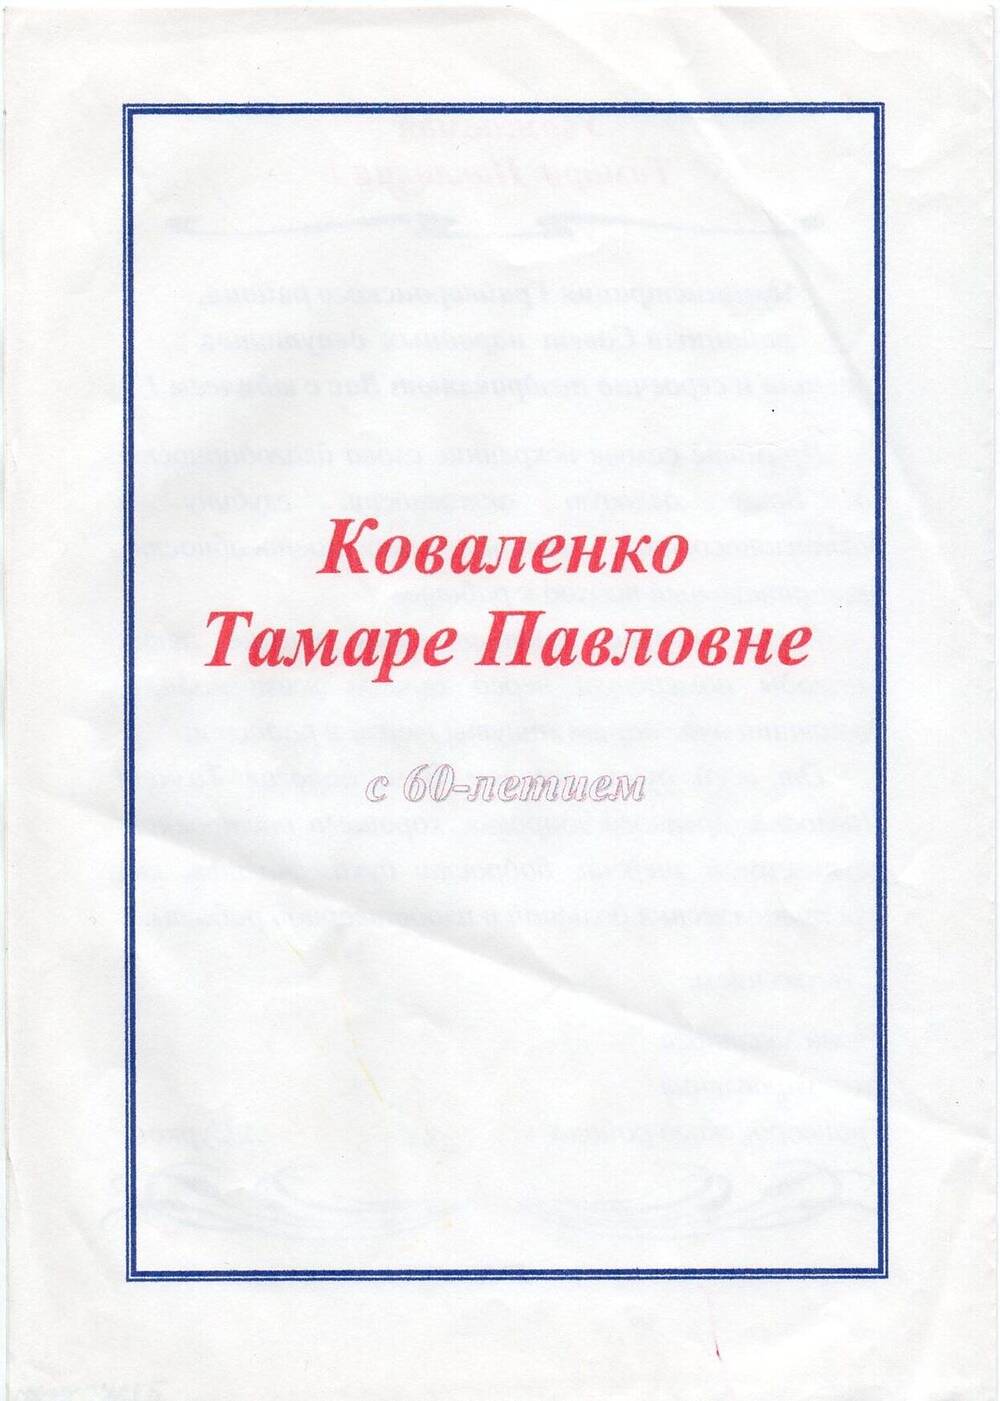 Письмо поздравительное Коваленко Т. П. с 60-летием